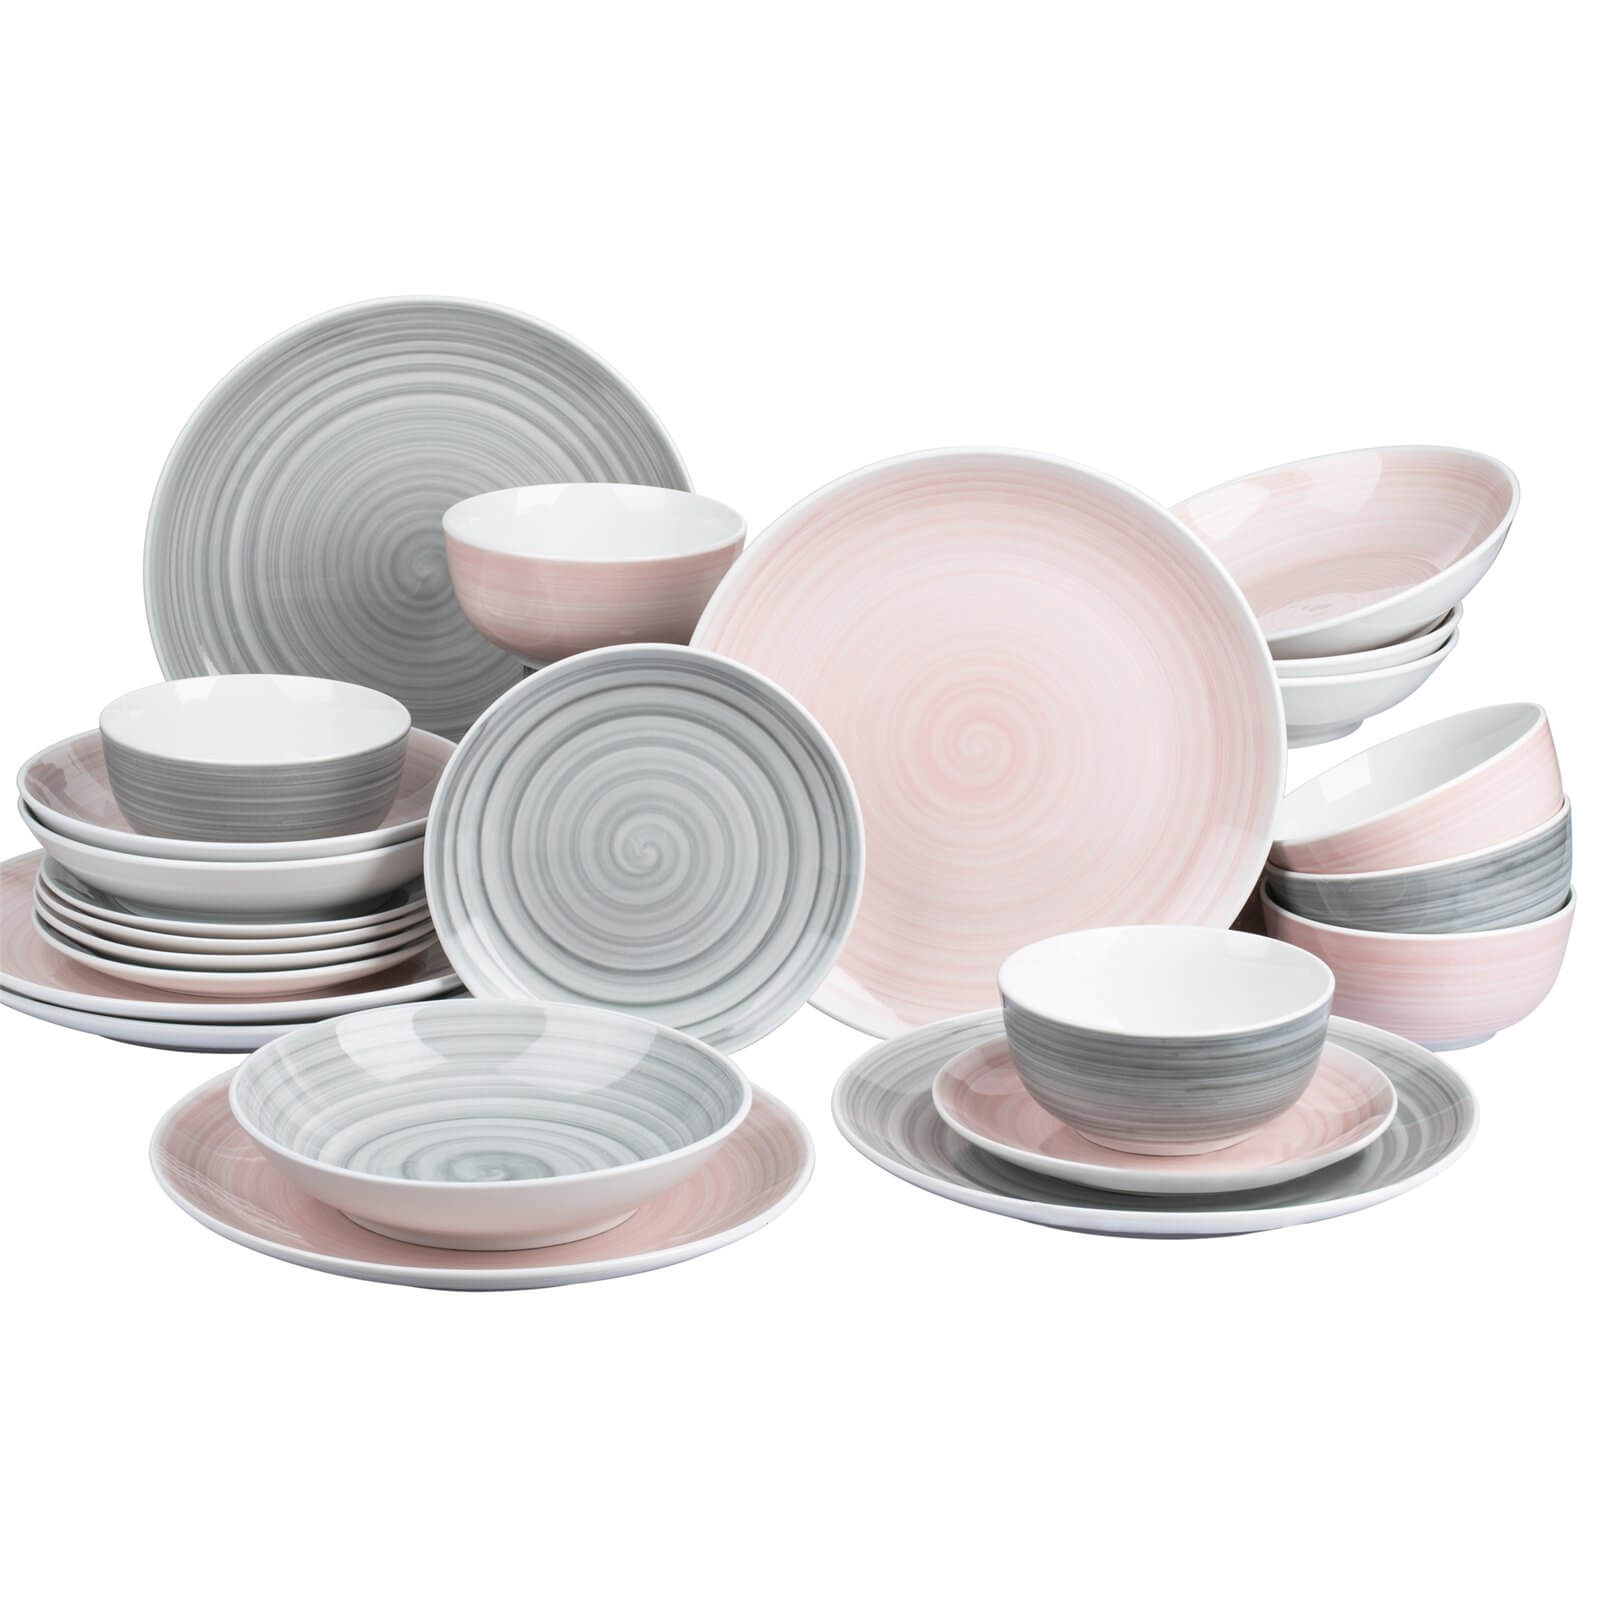 Spin Wash 24 Piece Dinner Set - Pink & Grey